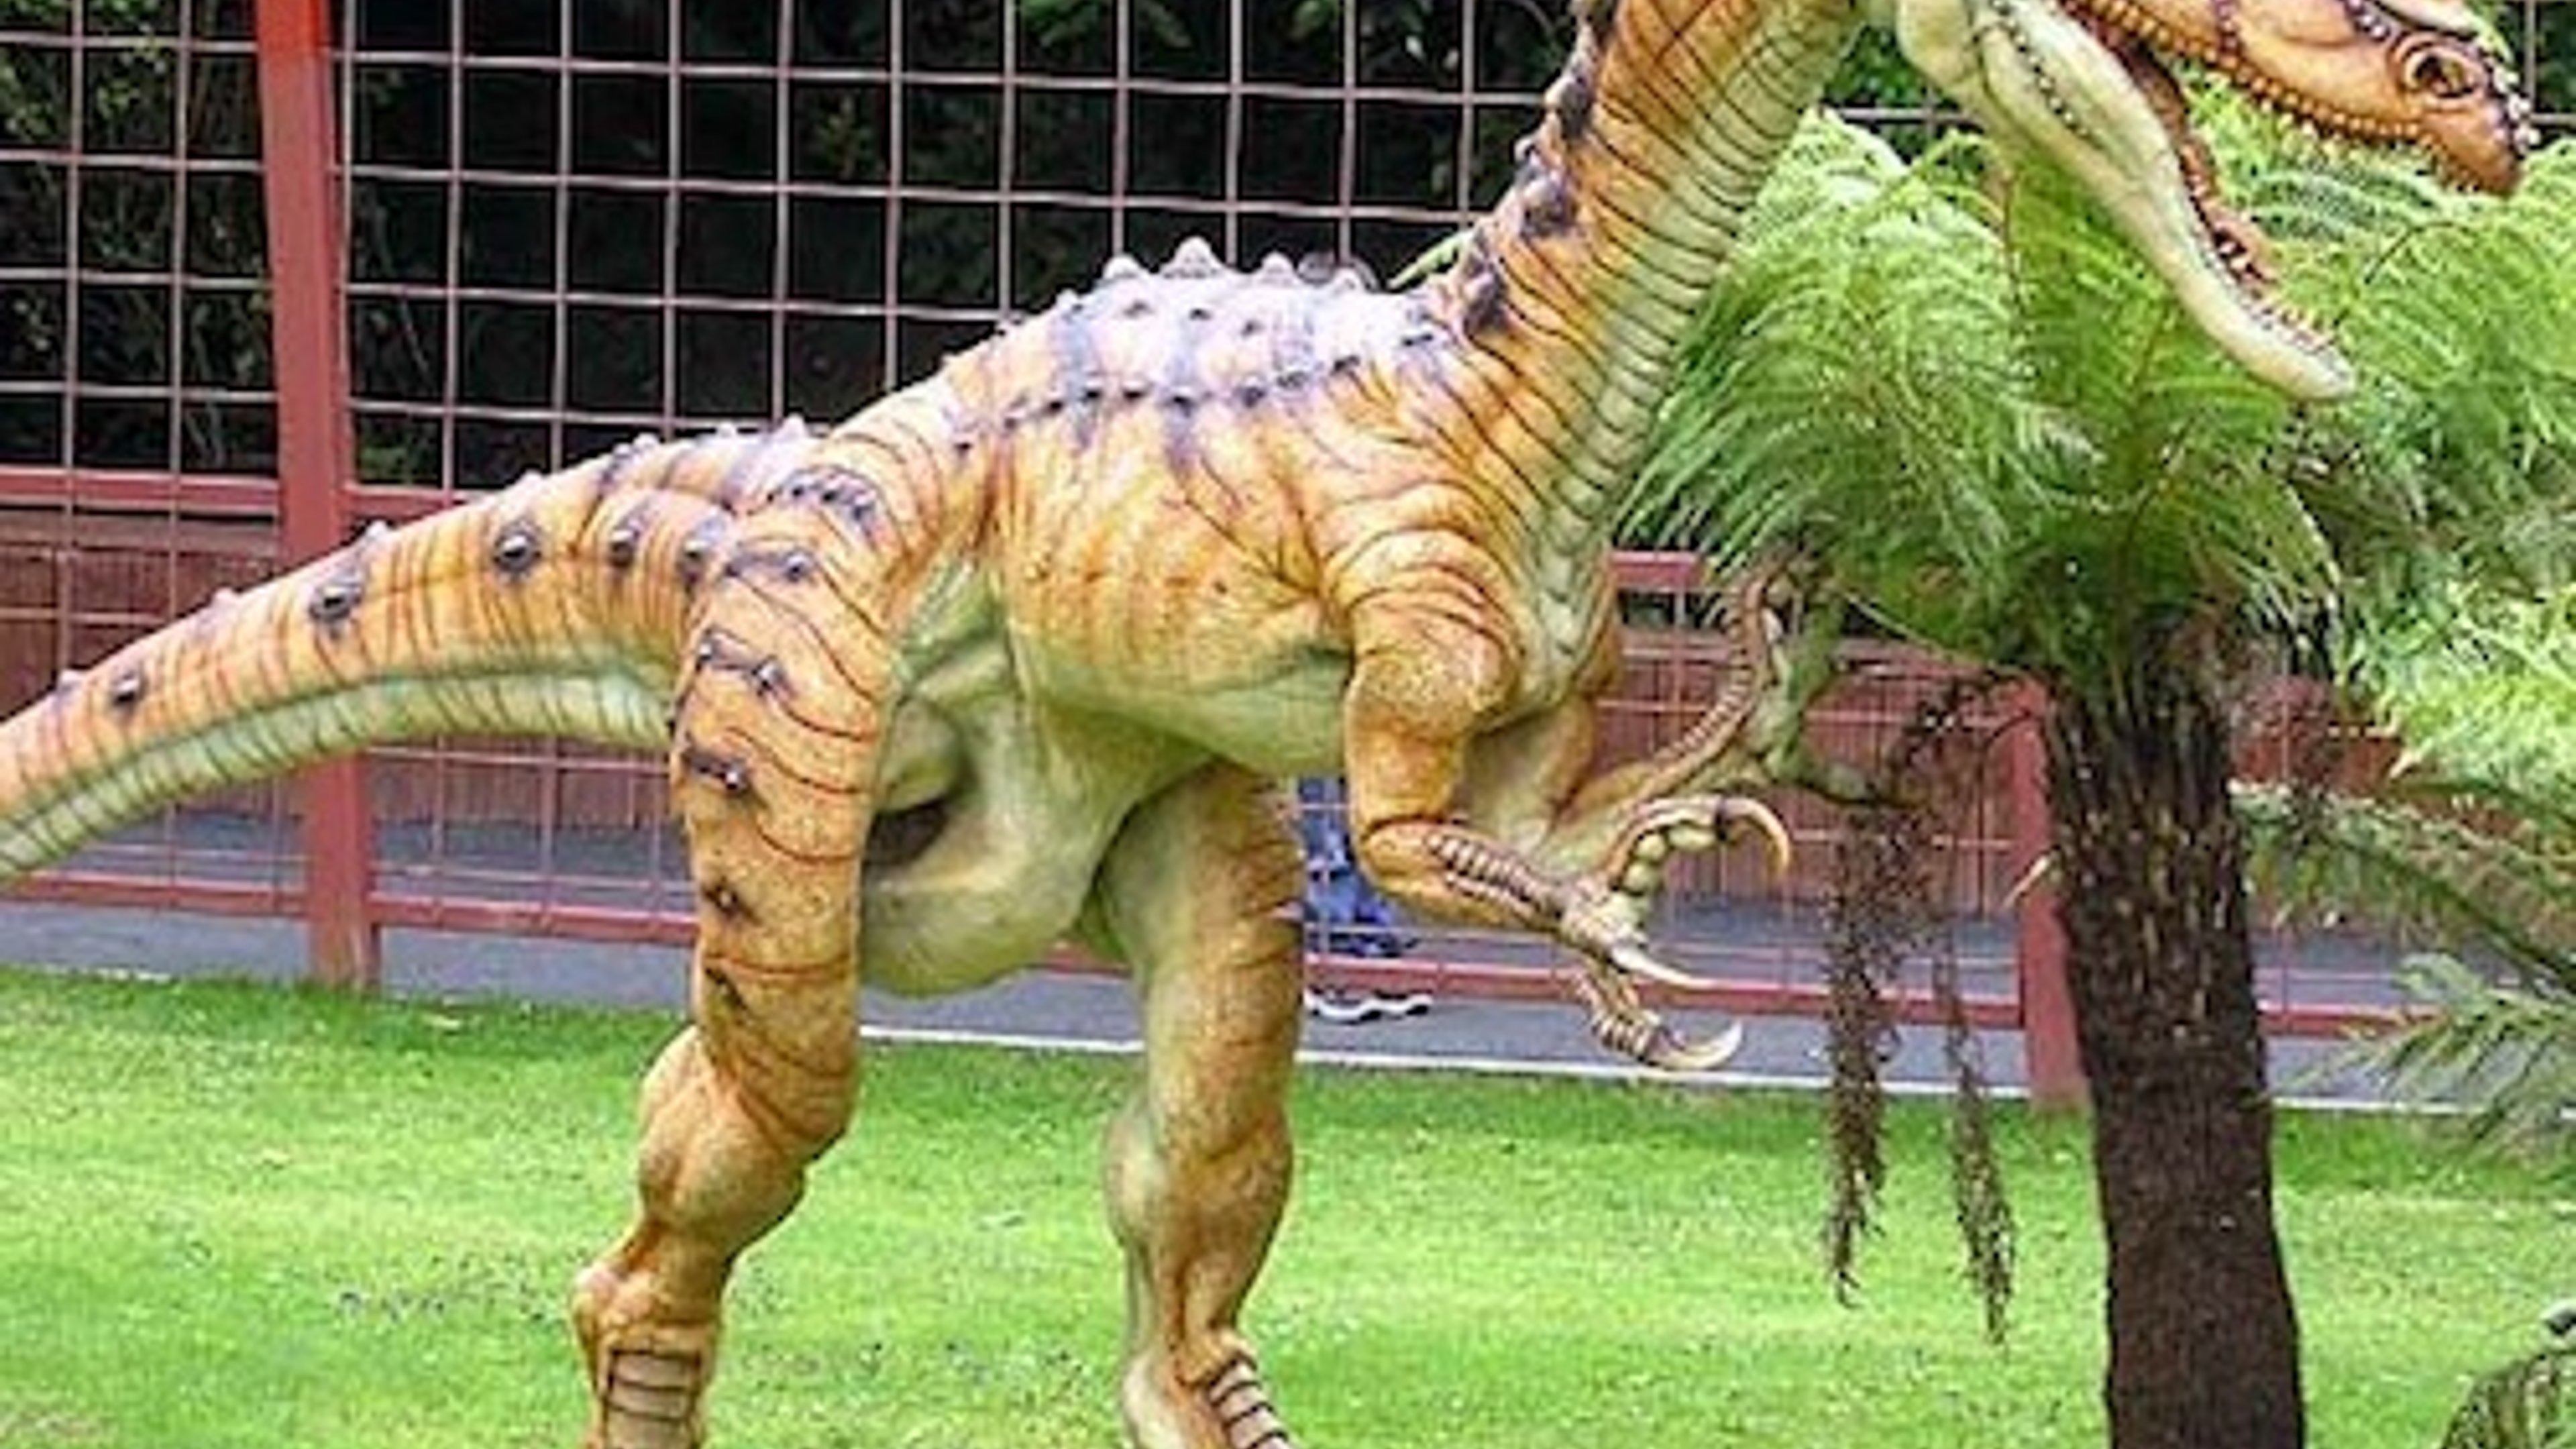 A dinosaur at the park